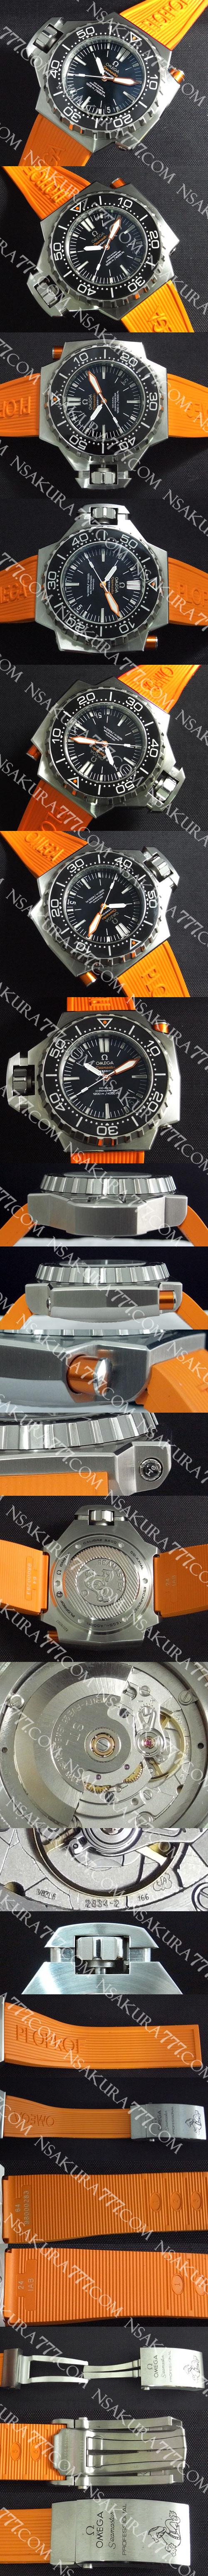 スーパーコピー時計オメガ シーマスター プロフェッショナル 1200 プロプロフ Swiss ETA社 2834-2 - ウインドウを閉じる